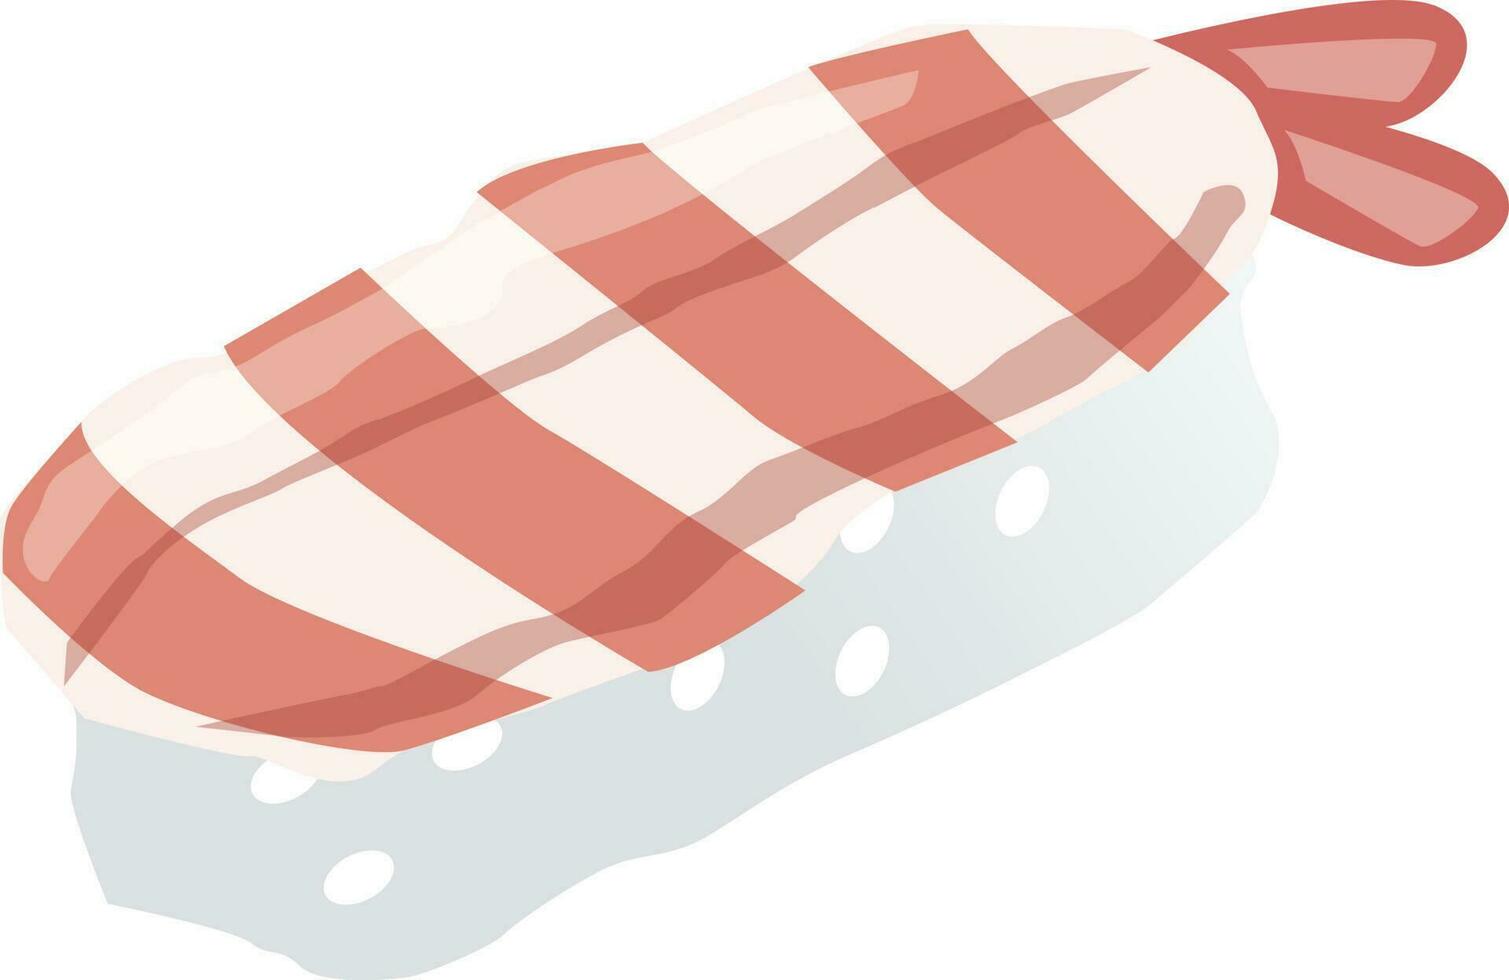 sushi Illustration Vector